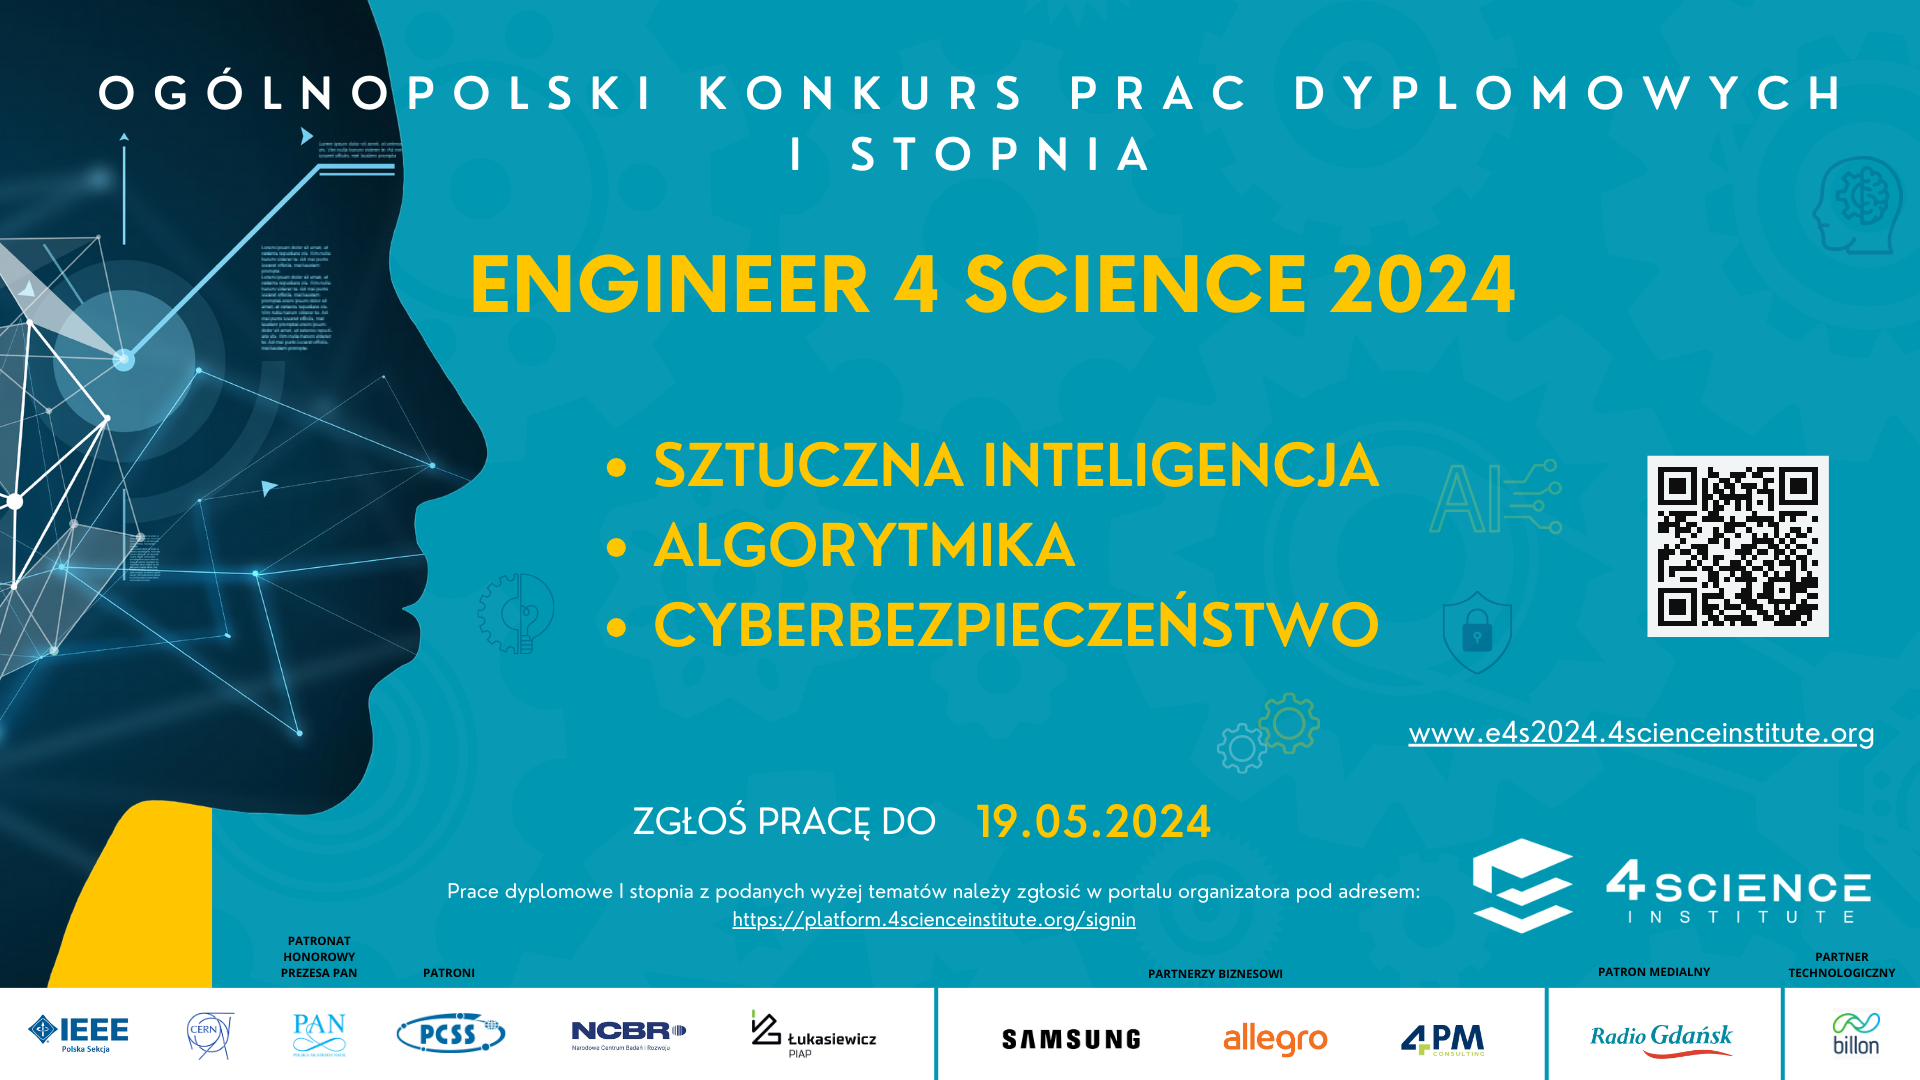 Plakat ogólnopolskiego konkursu prac dyplomowych I stopnia Engineer 4 Science 2024